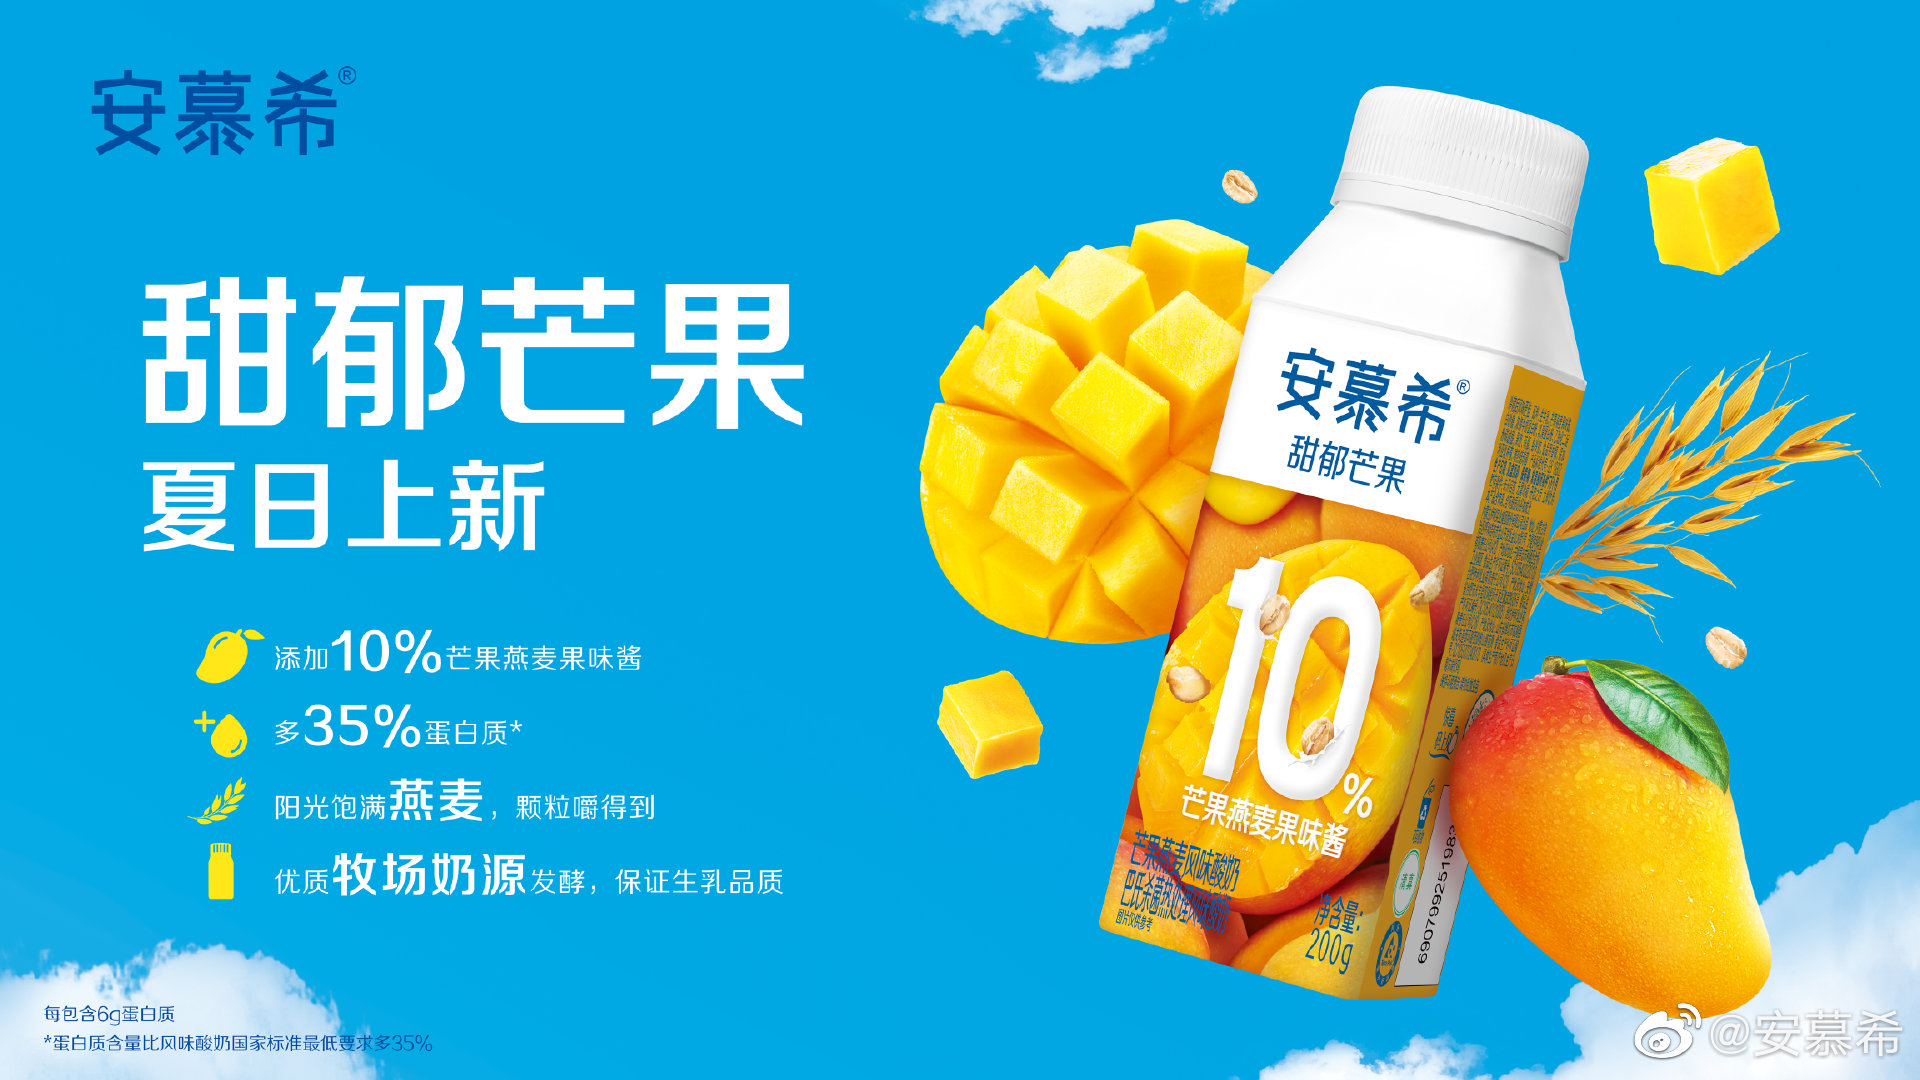 茶百道推出「真够芒」芒果酸奶 | Foodaily每日食品